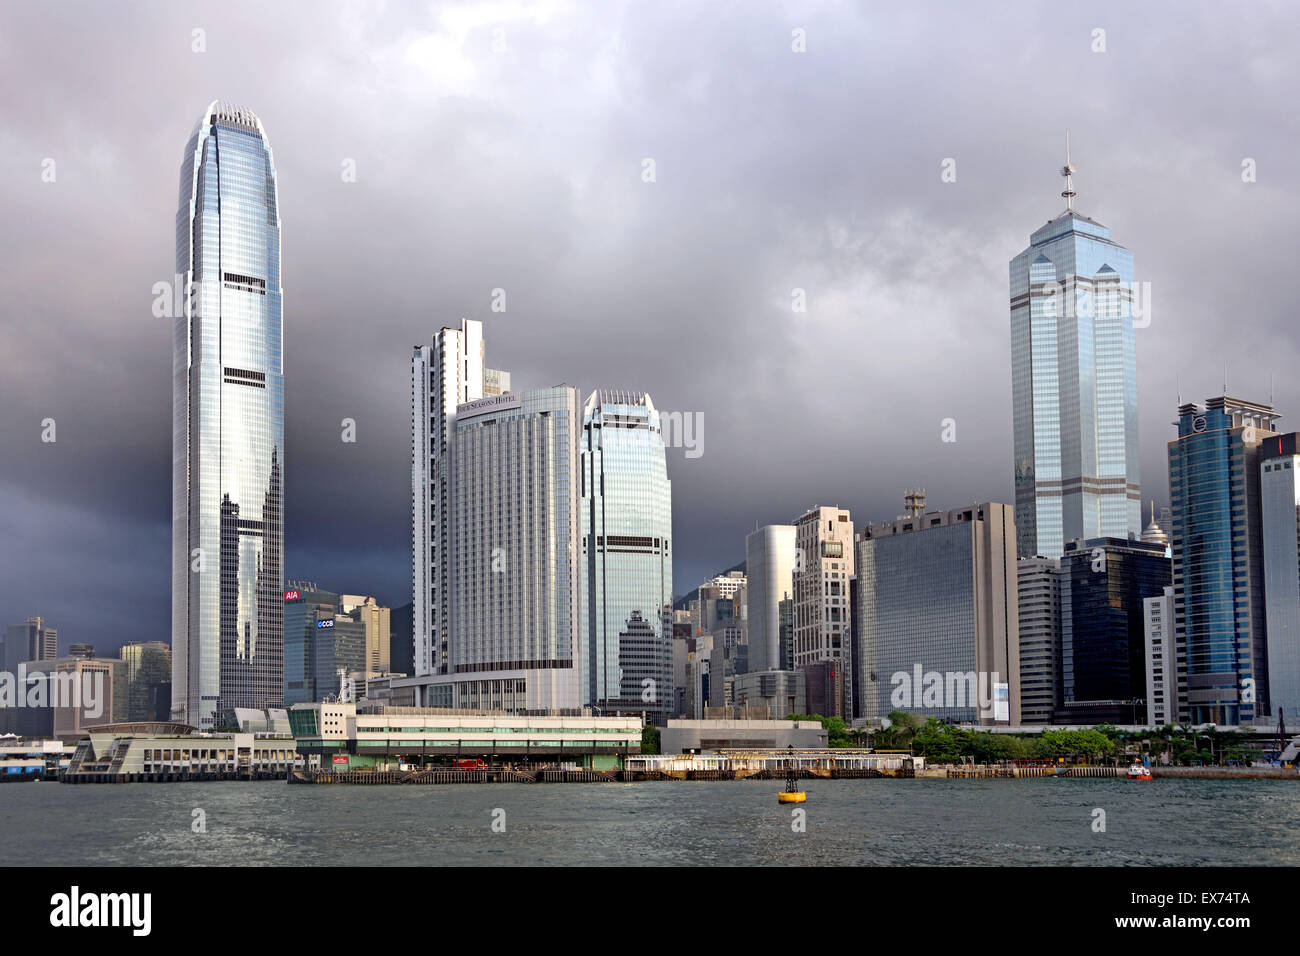 L'île de Hong Kong city skyline skyscrapers Chine Victoria Harbour Banque D'Images